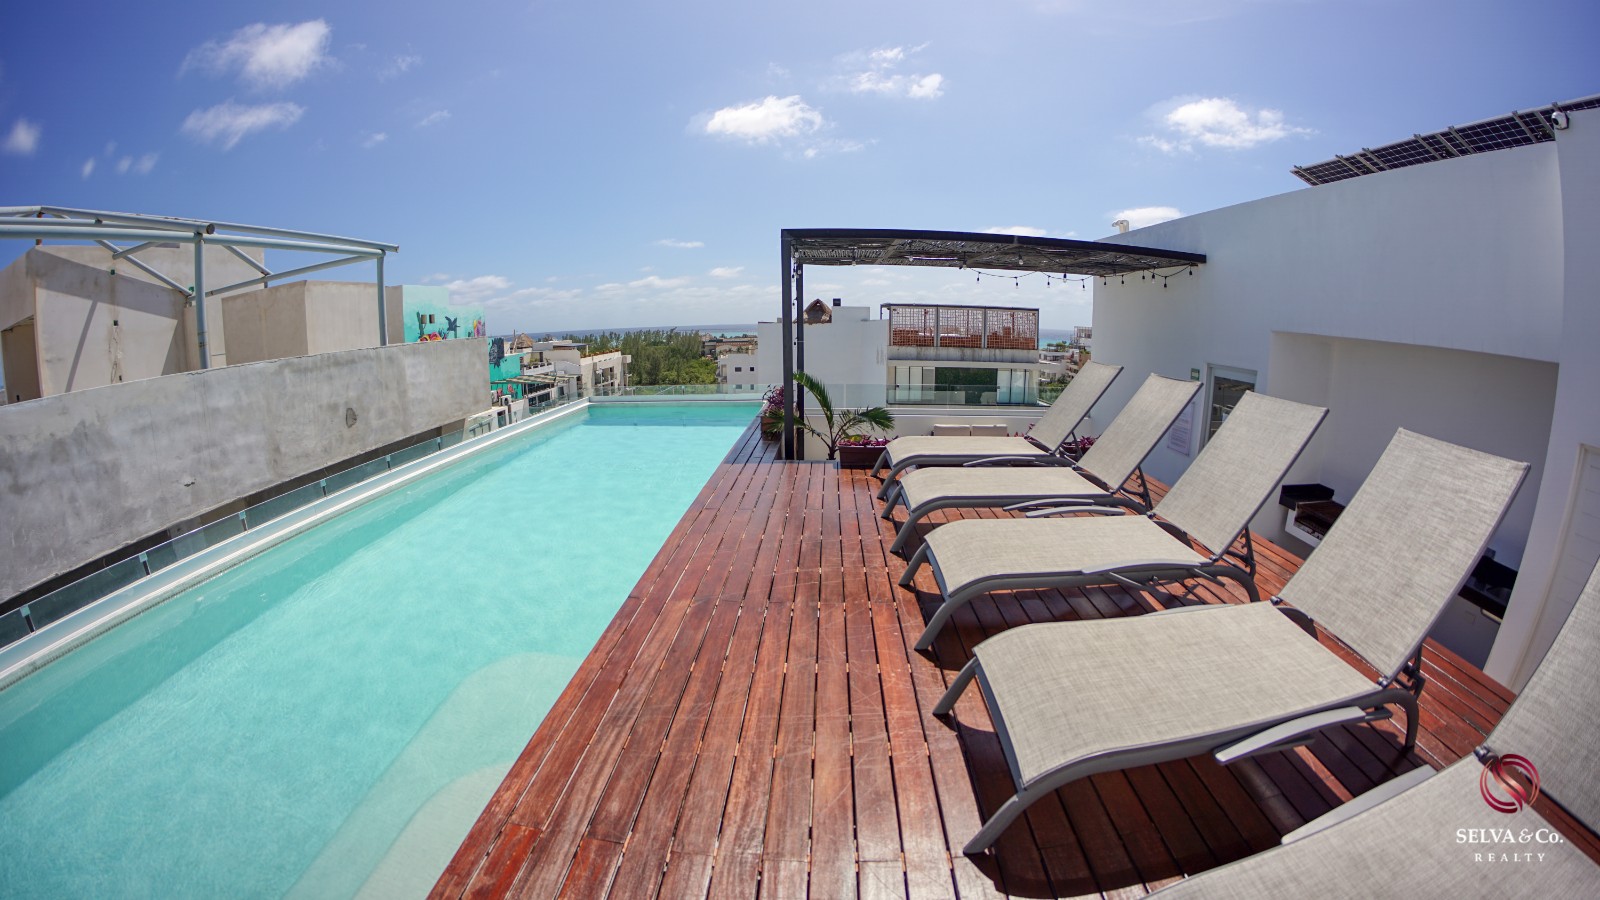 Condominio a  a 190 metros de la playa, vista al mar desde el rooftop, pasos de la Quinta avenida, en hotel boutique con room service.